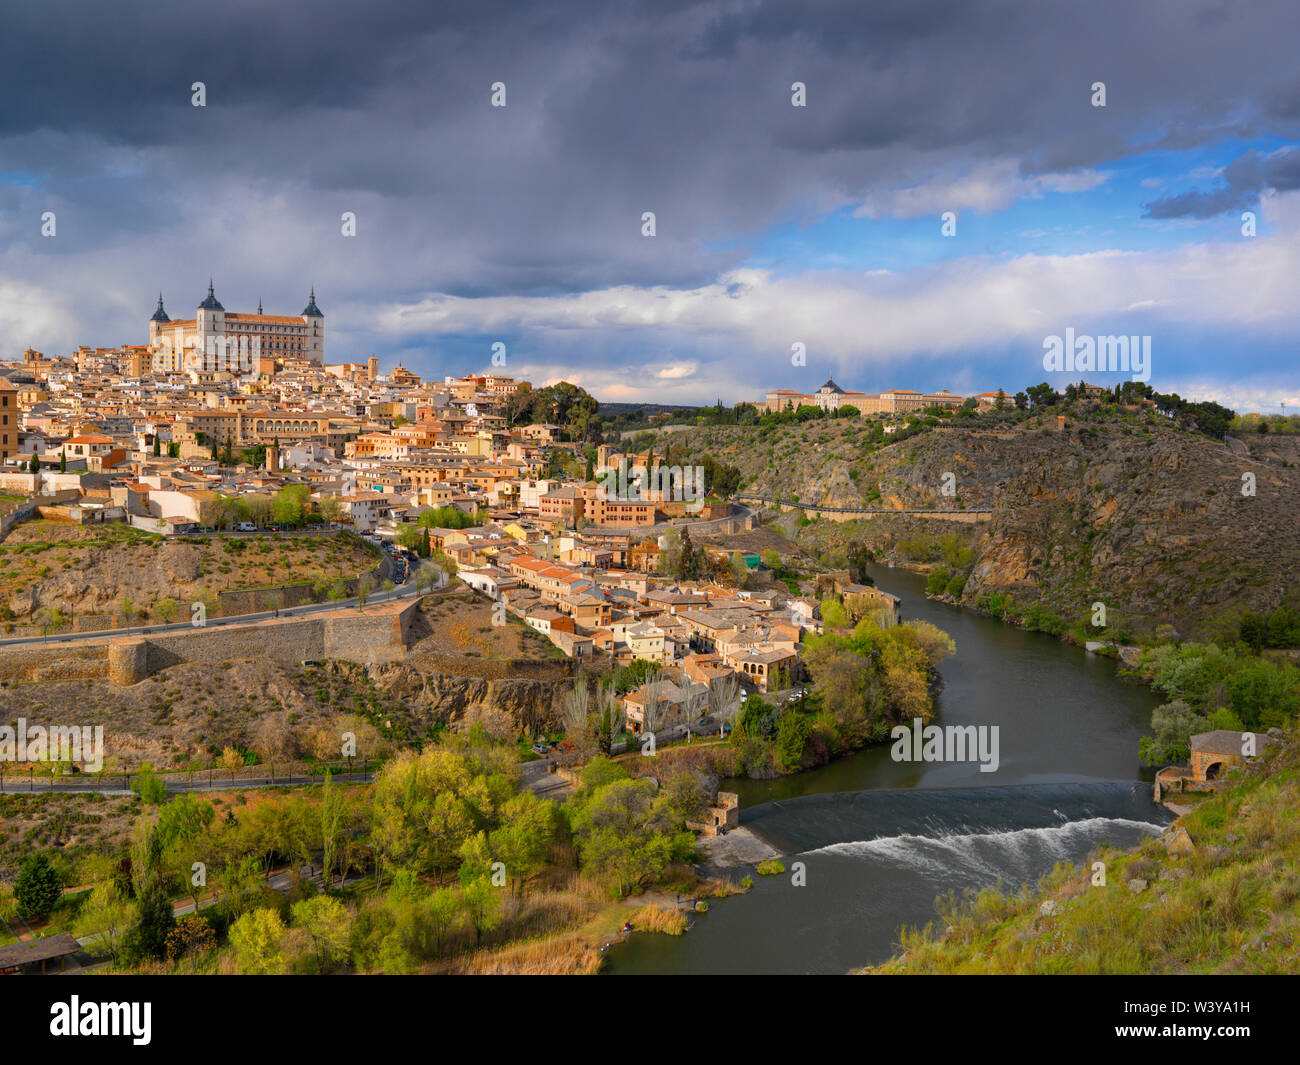 España, Castilla La Mancha, Toledo, Descripción general de la ciudad, declarado Patrimonio de la humanidad por la UNESCO Foto de stock